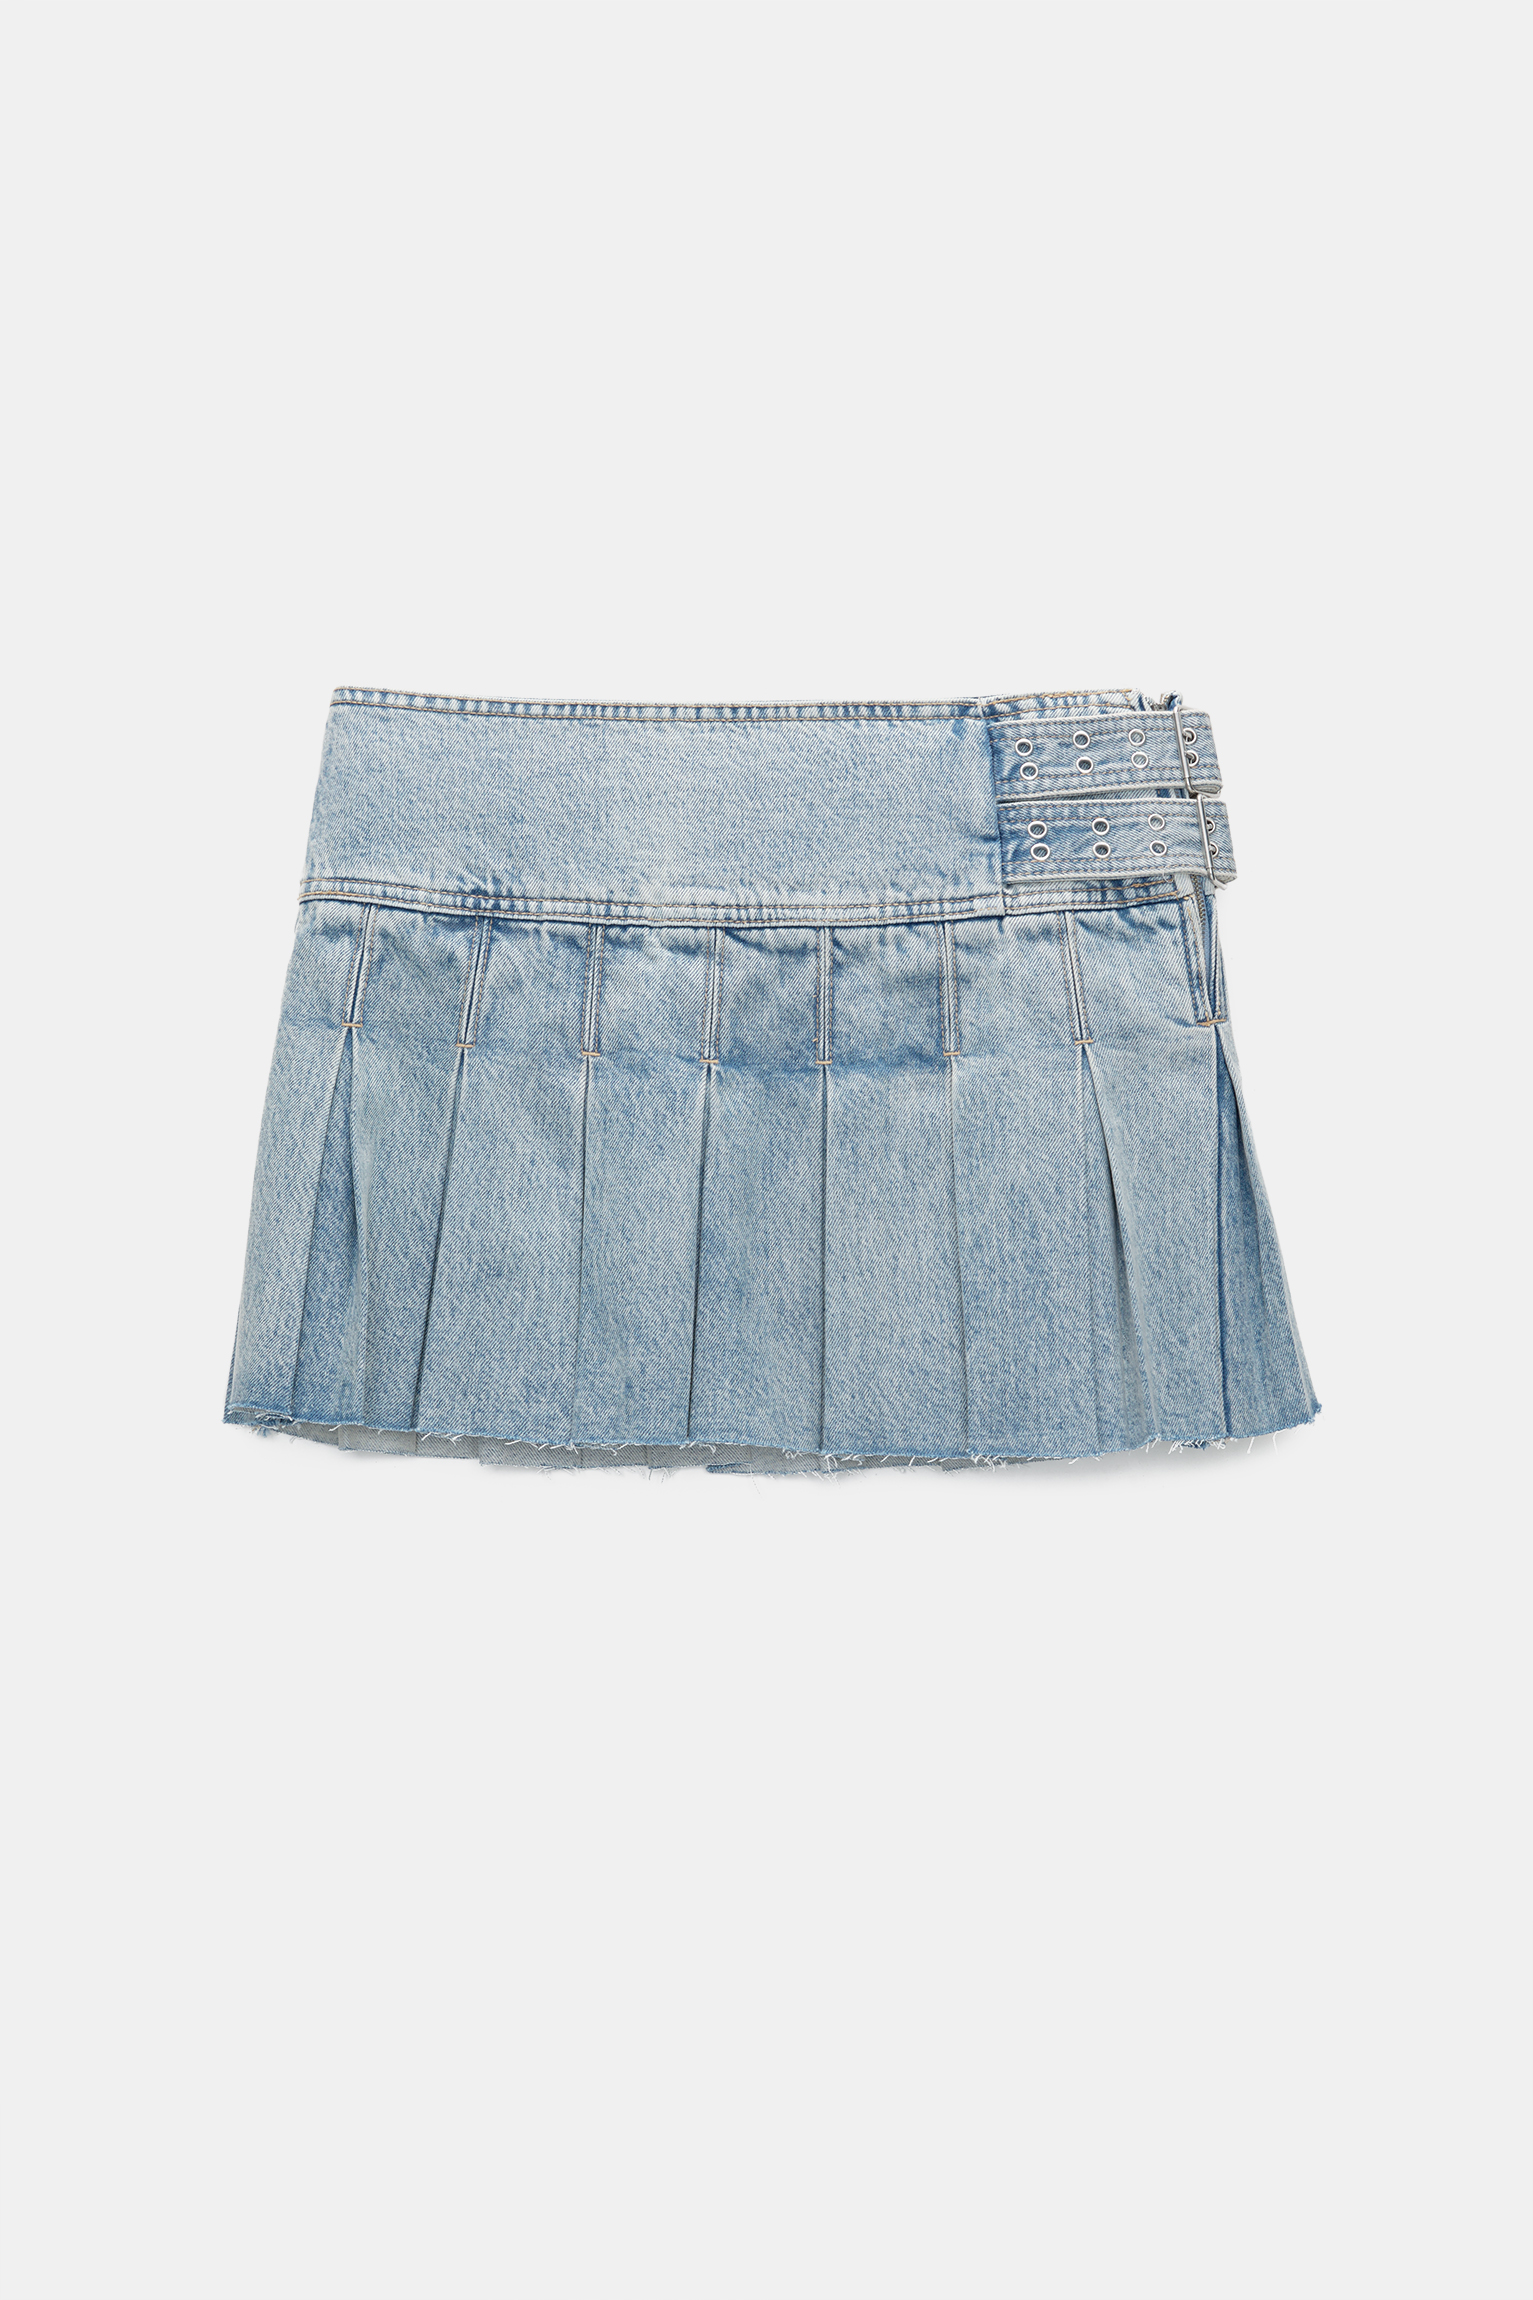 Off-White pleated asymmetric denim skirt - Blue